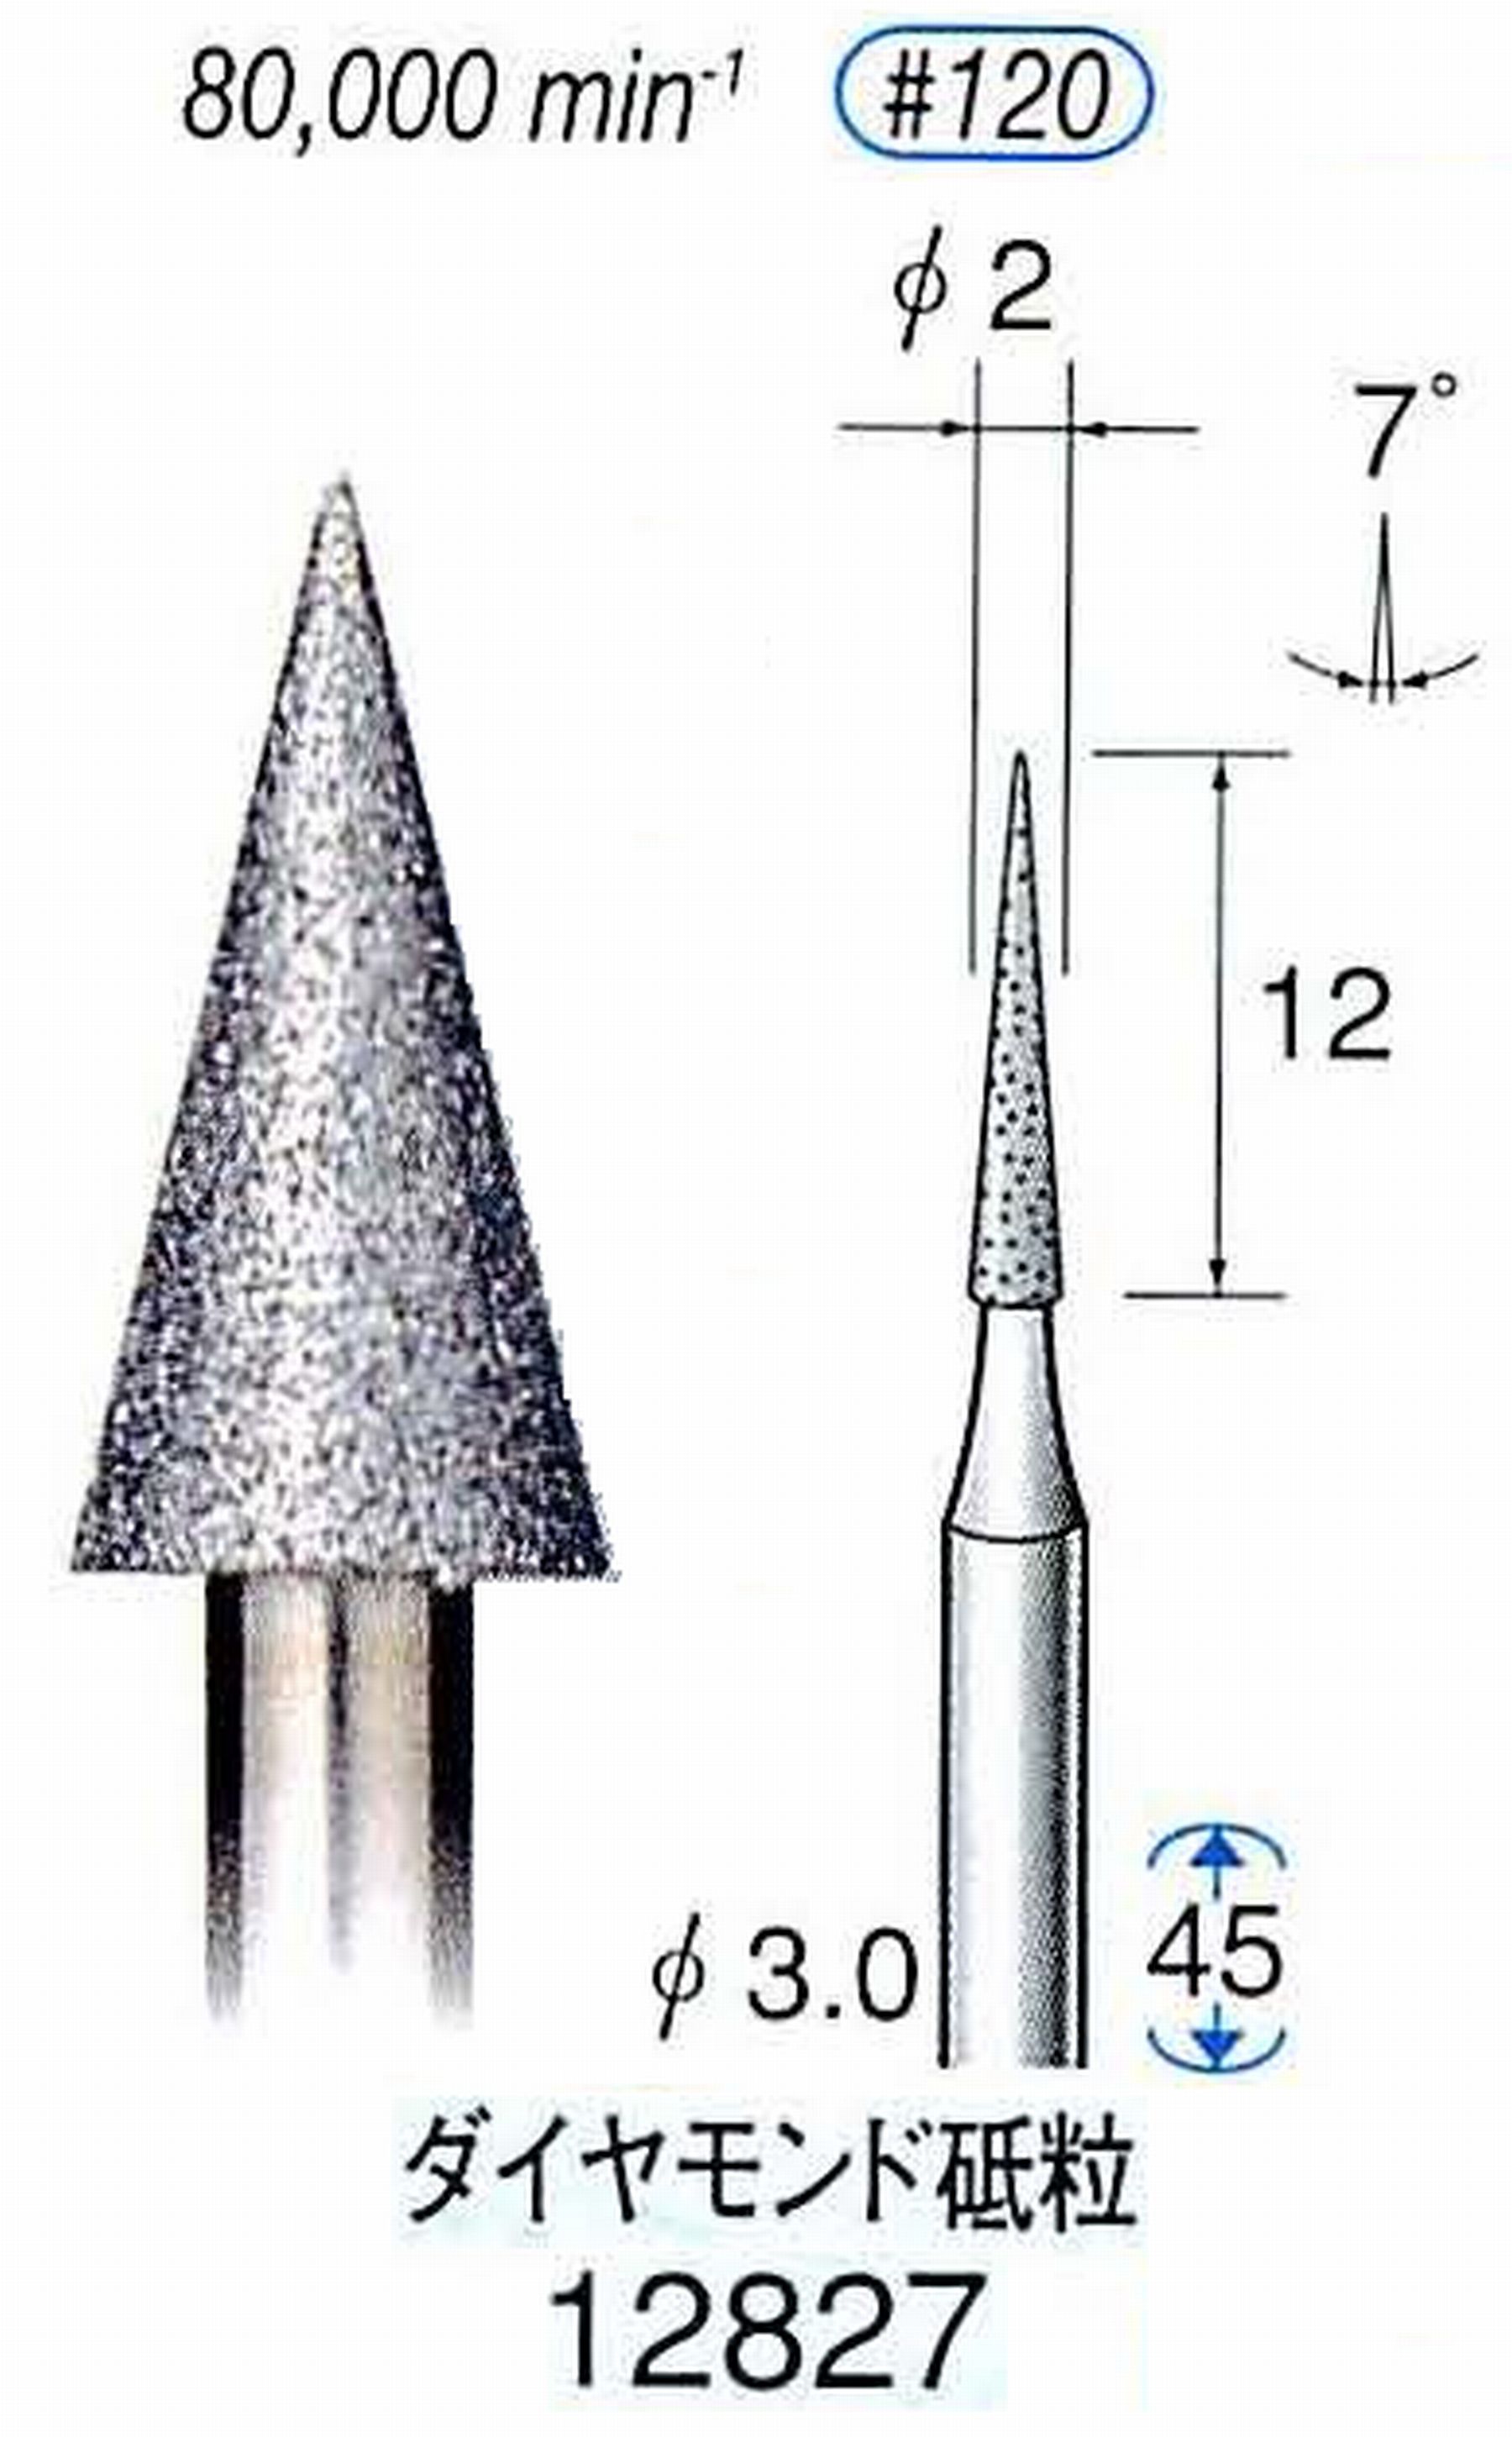 ナカニシ/NAKANISHI クラフト・ホビー用ダイヤモンドバー ダイヤモンド砥粒 軸径(シャンク)φ3.0mm 12827